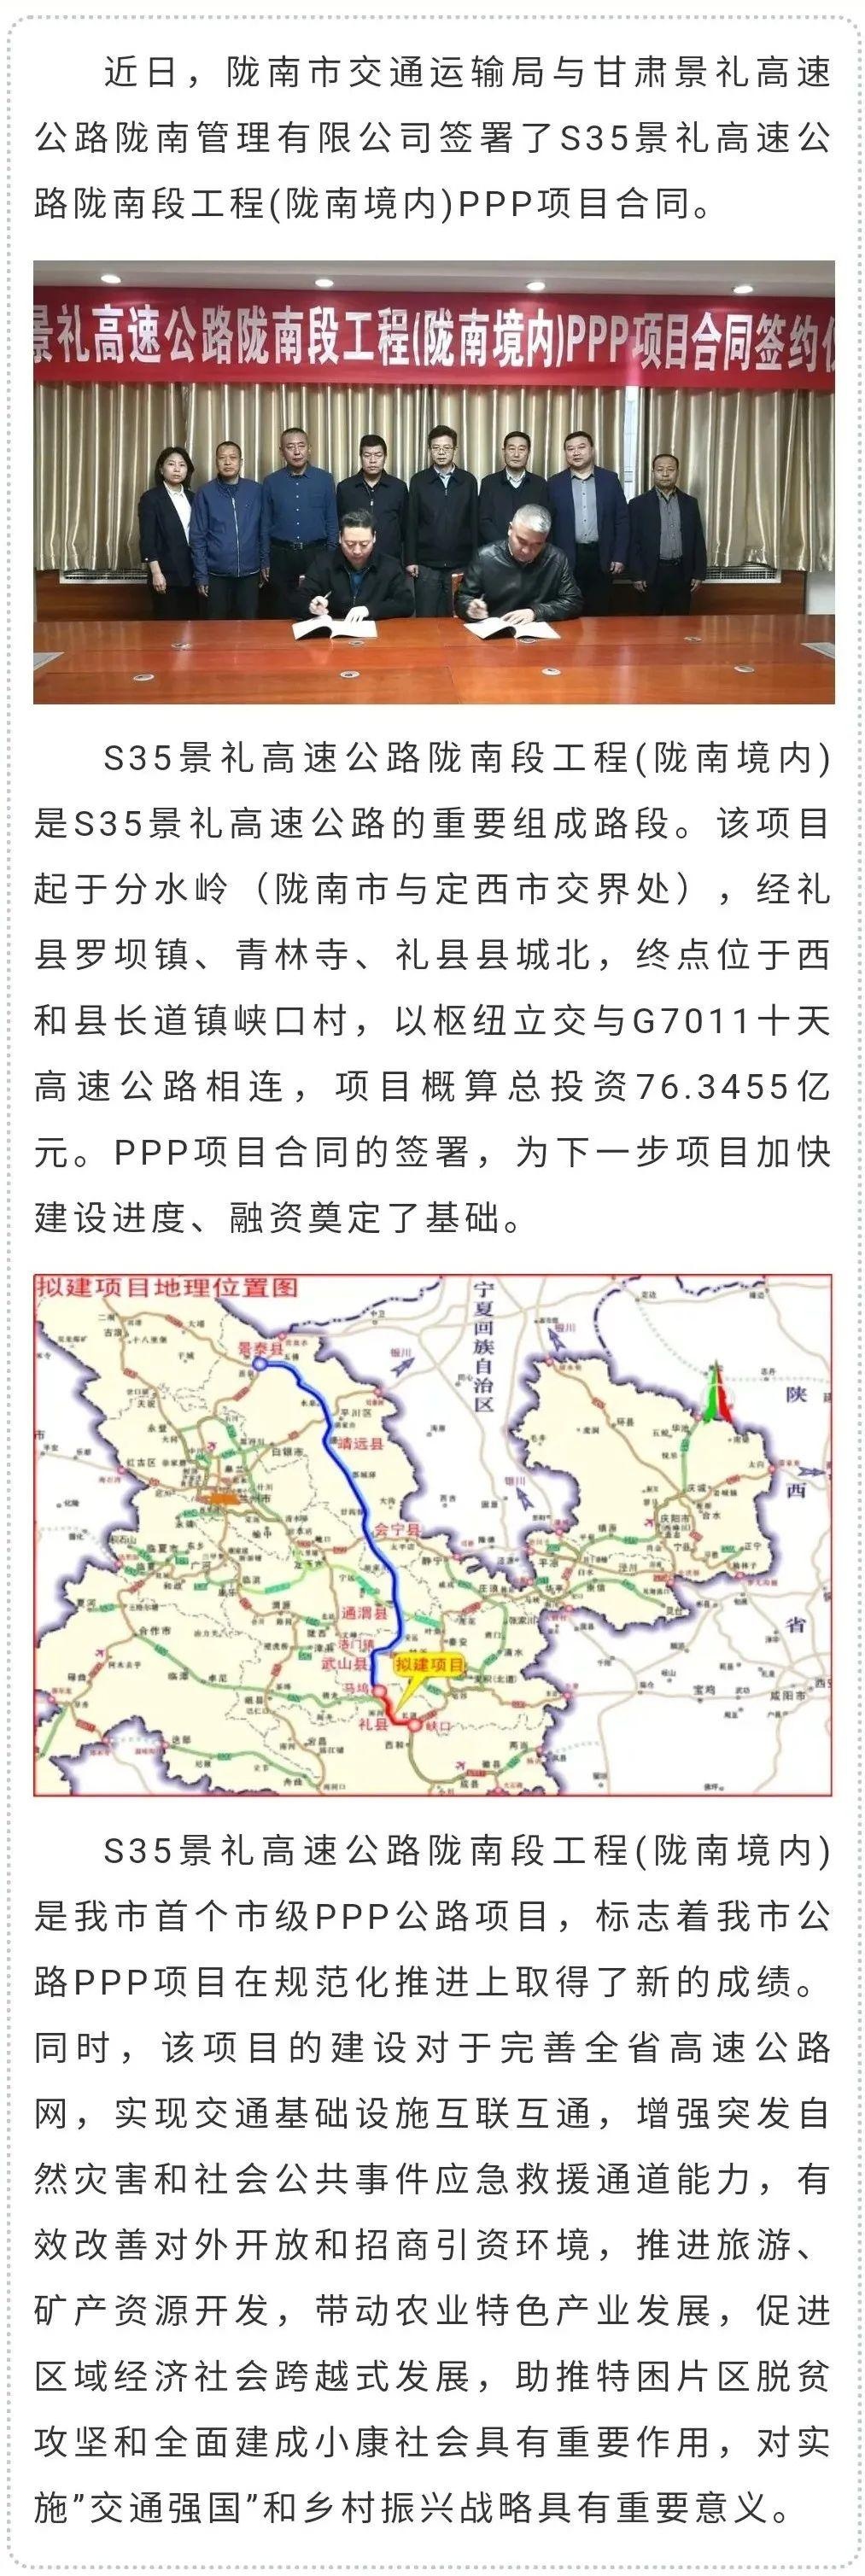 甘肃省礼县高速公路图图片